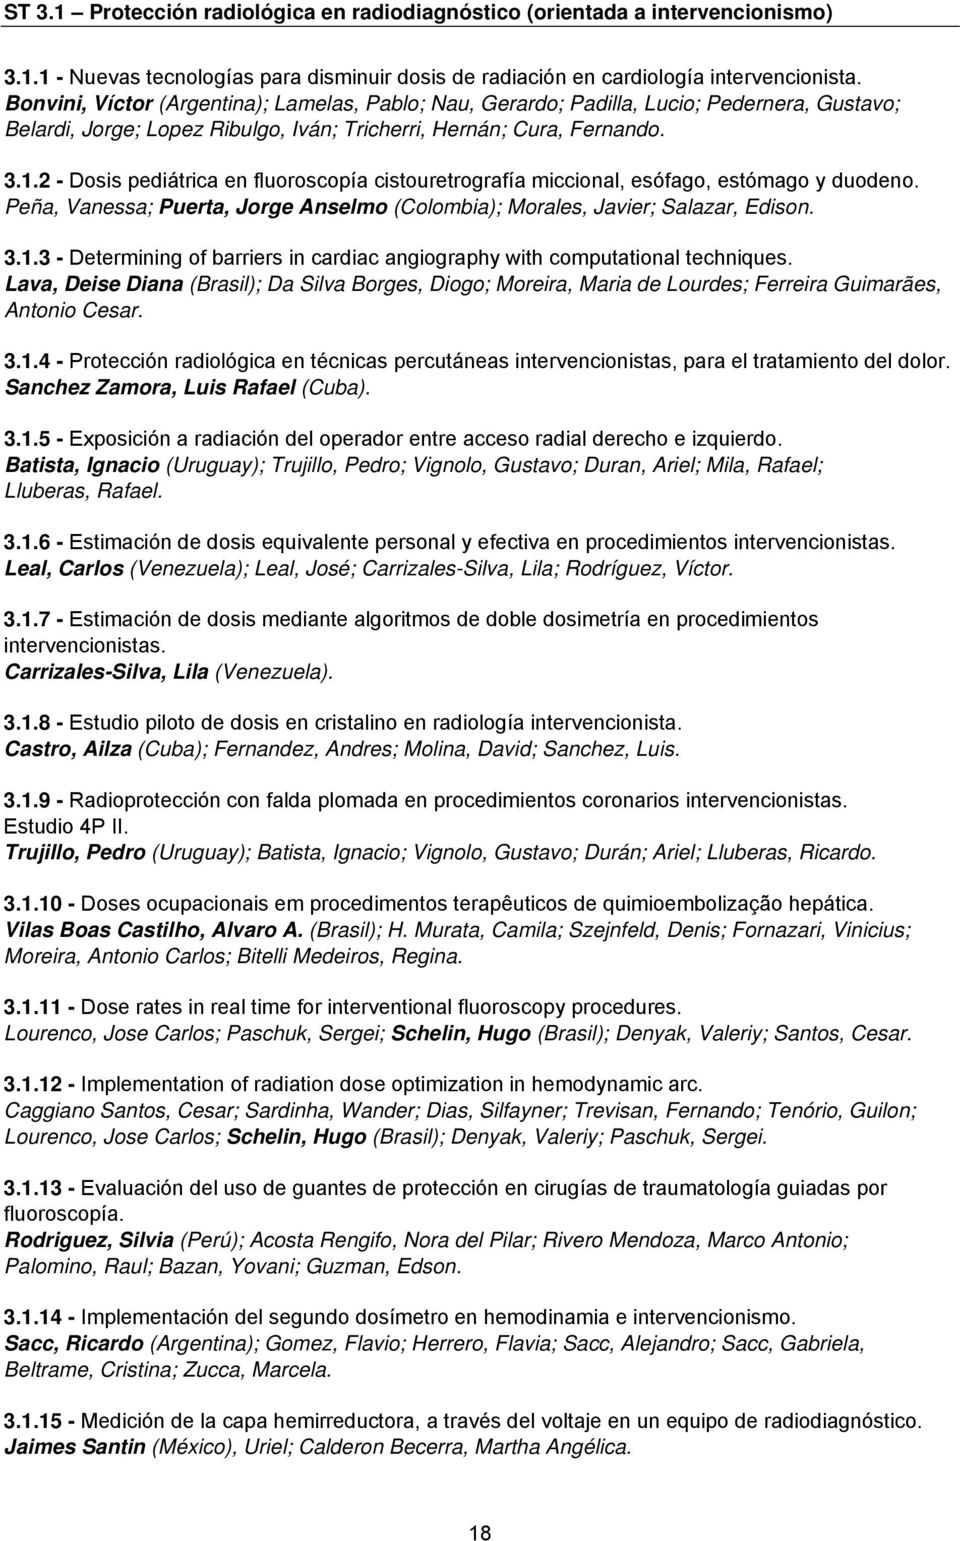 2 - Dosis pediátrica en fluoroscopía cistouretrografía miccional, esófago, estómago y duodeno. Peña, Vanessa; Puerta, Jorge Anselmo (Colombia); Morales, Javier; Salazar, Edison. 3.1.